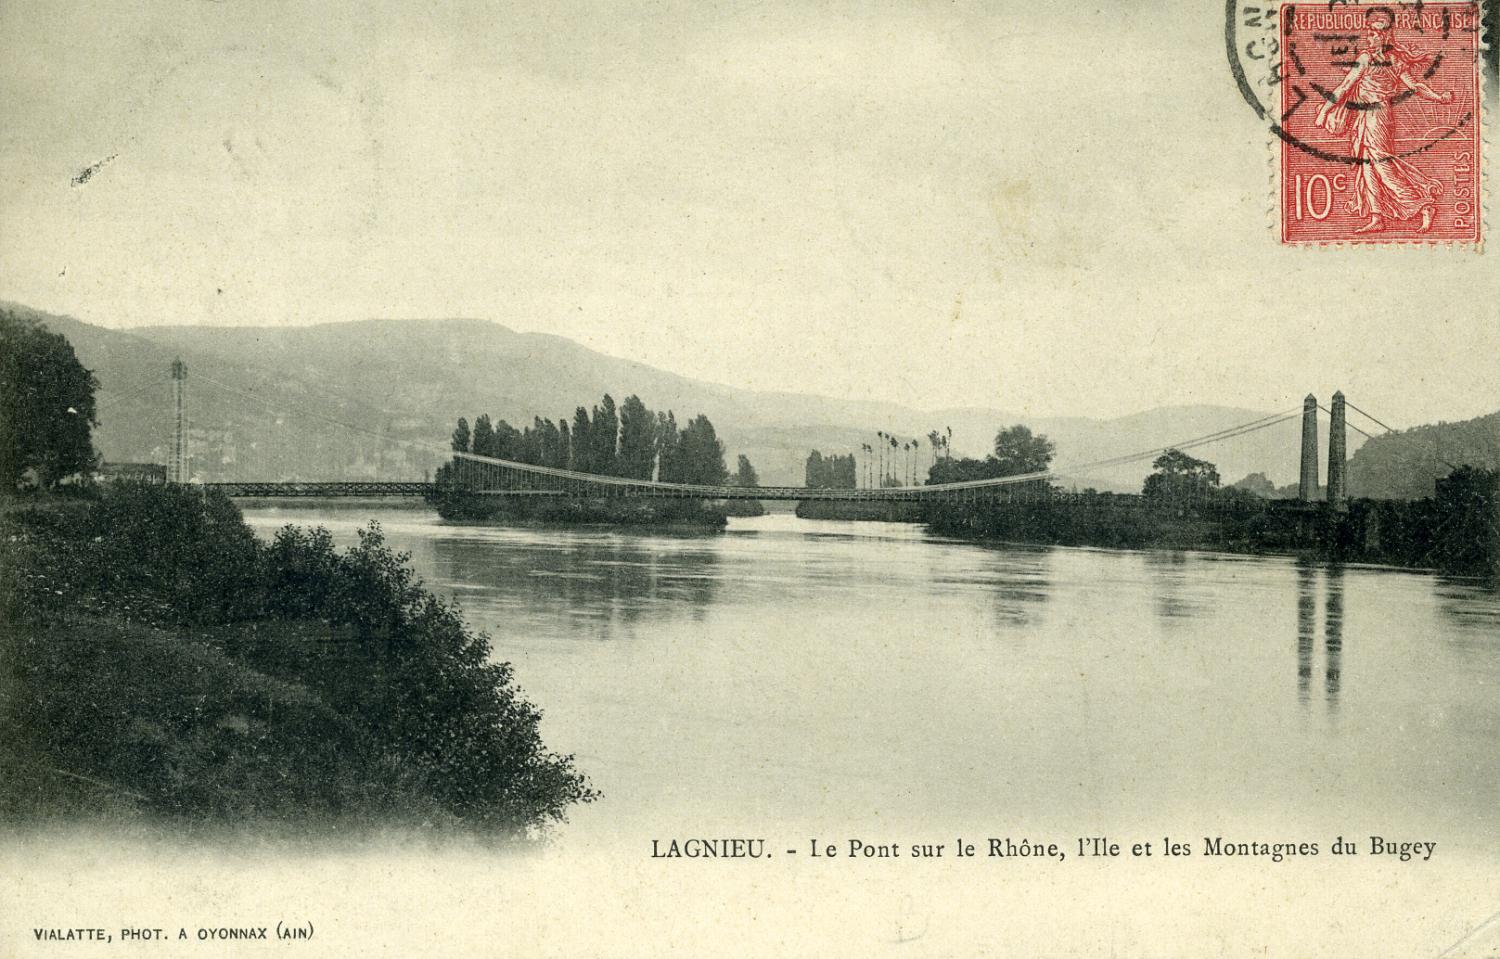 Lagnieu. - Le Pont sur le Rhône, l'Ile et les Montagnes du Bugey.